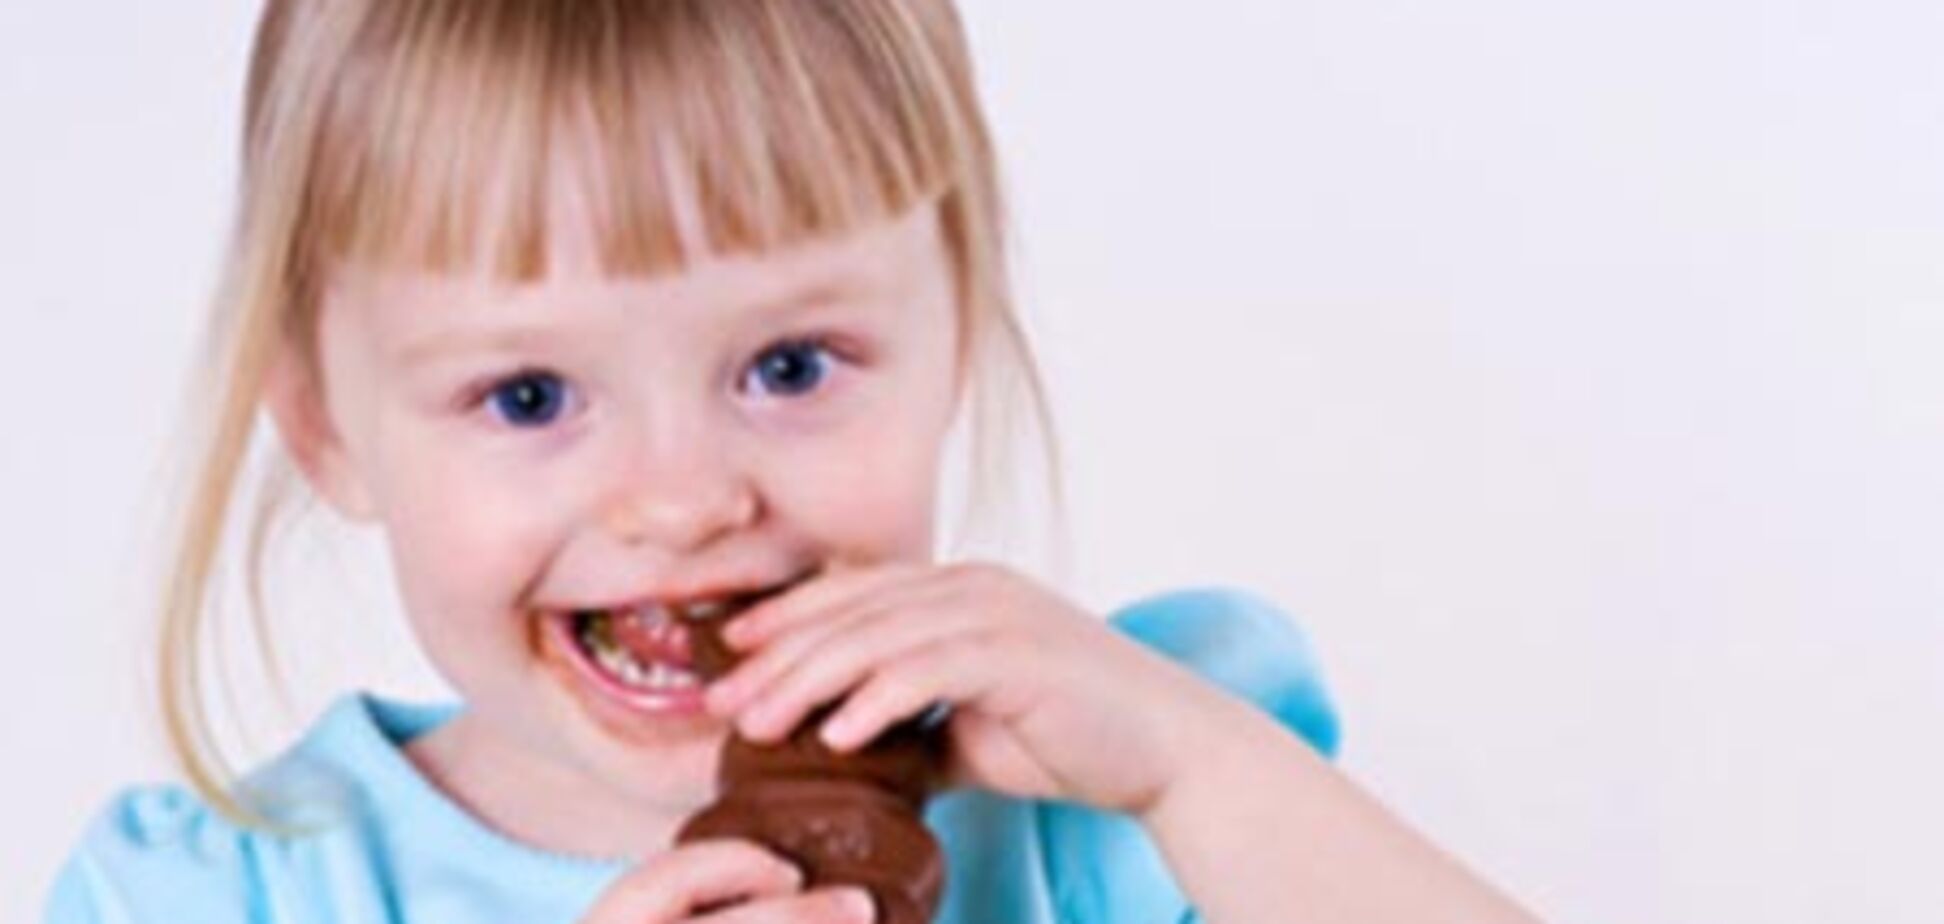 Употребление шоколада в детстве развивает агрессию
 